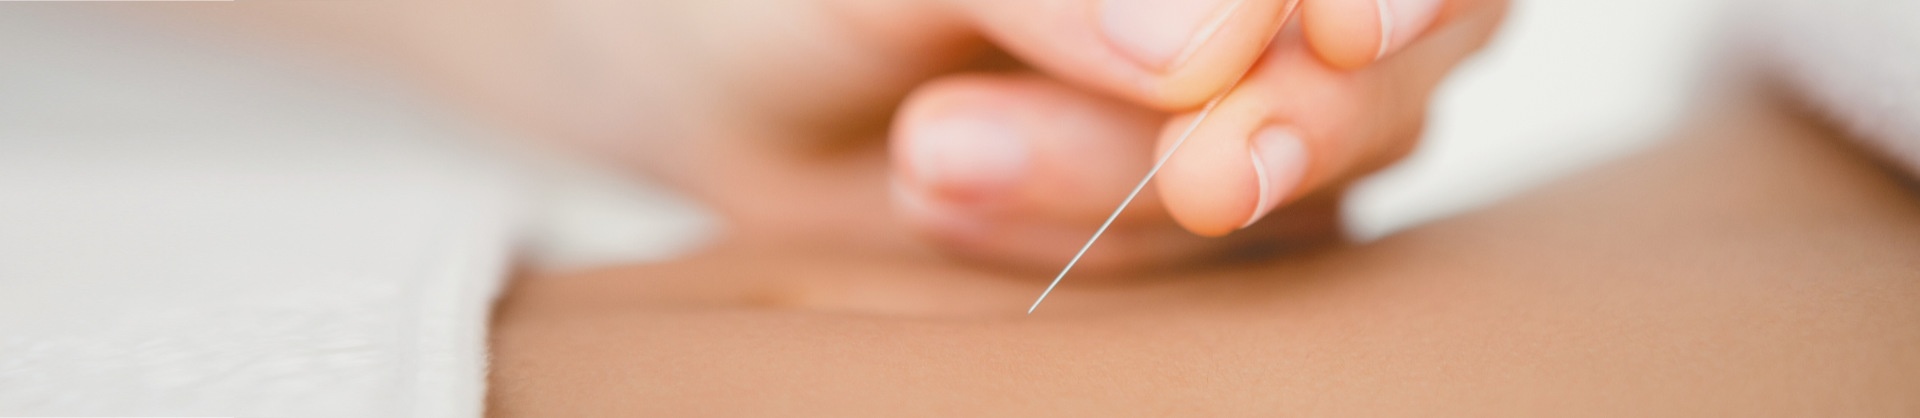 Acupunctuur tarief acupuncturist